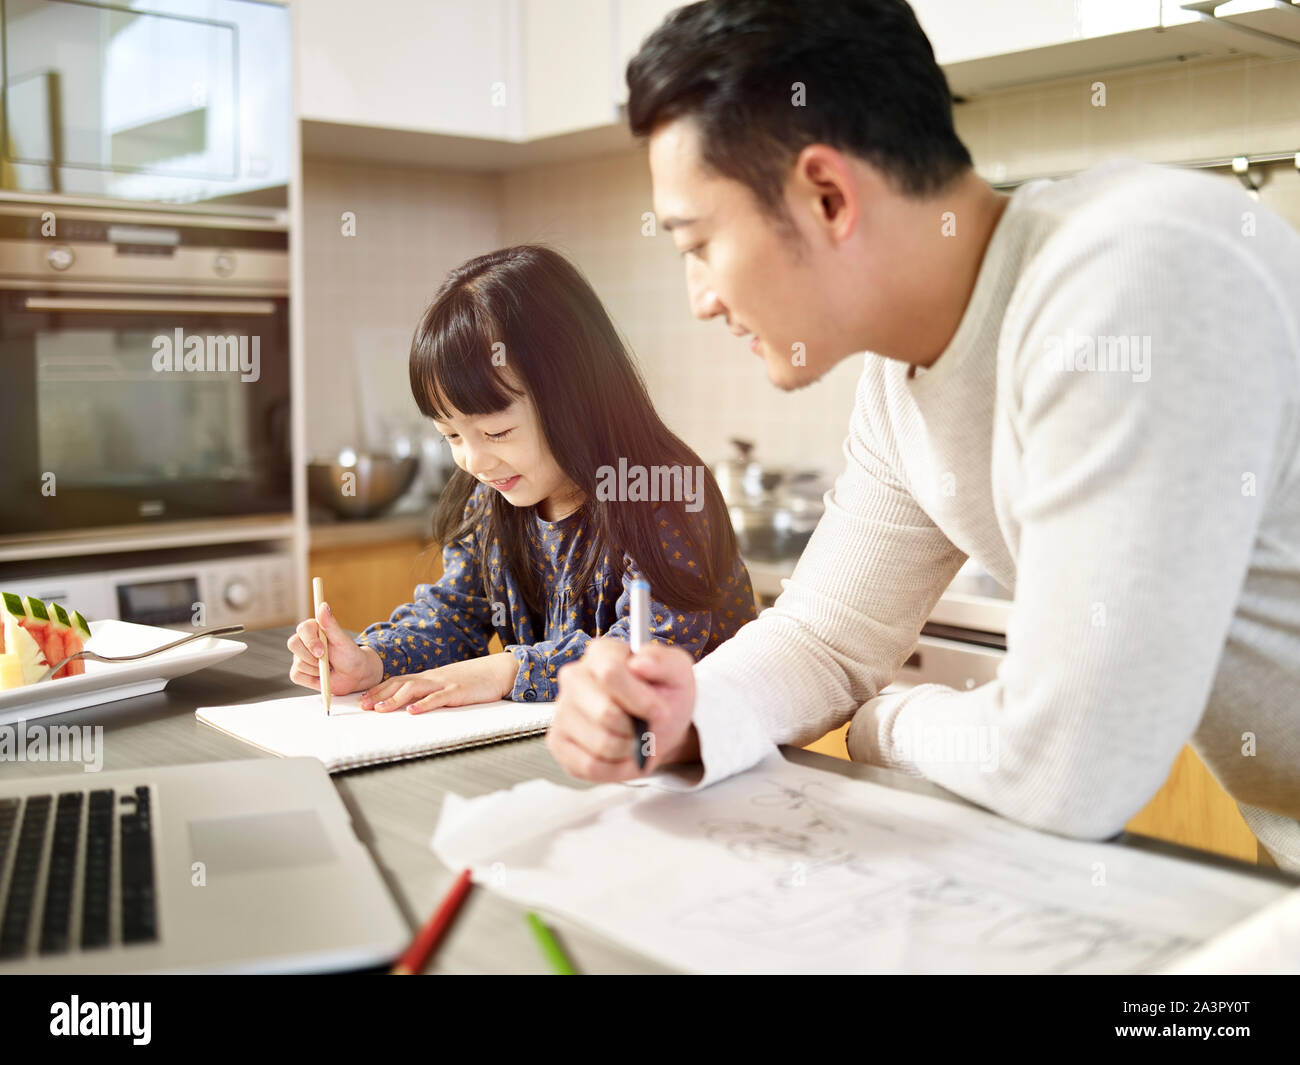 Giovane uomo asiatico free lance designer padre lavora a casa mentre si prende cura della figlia. Foto Stock